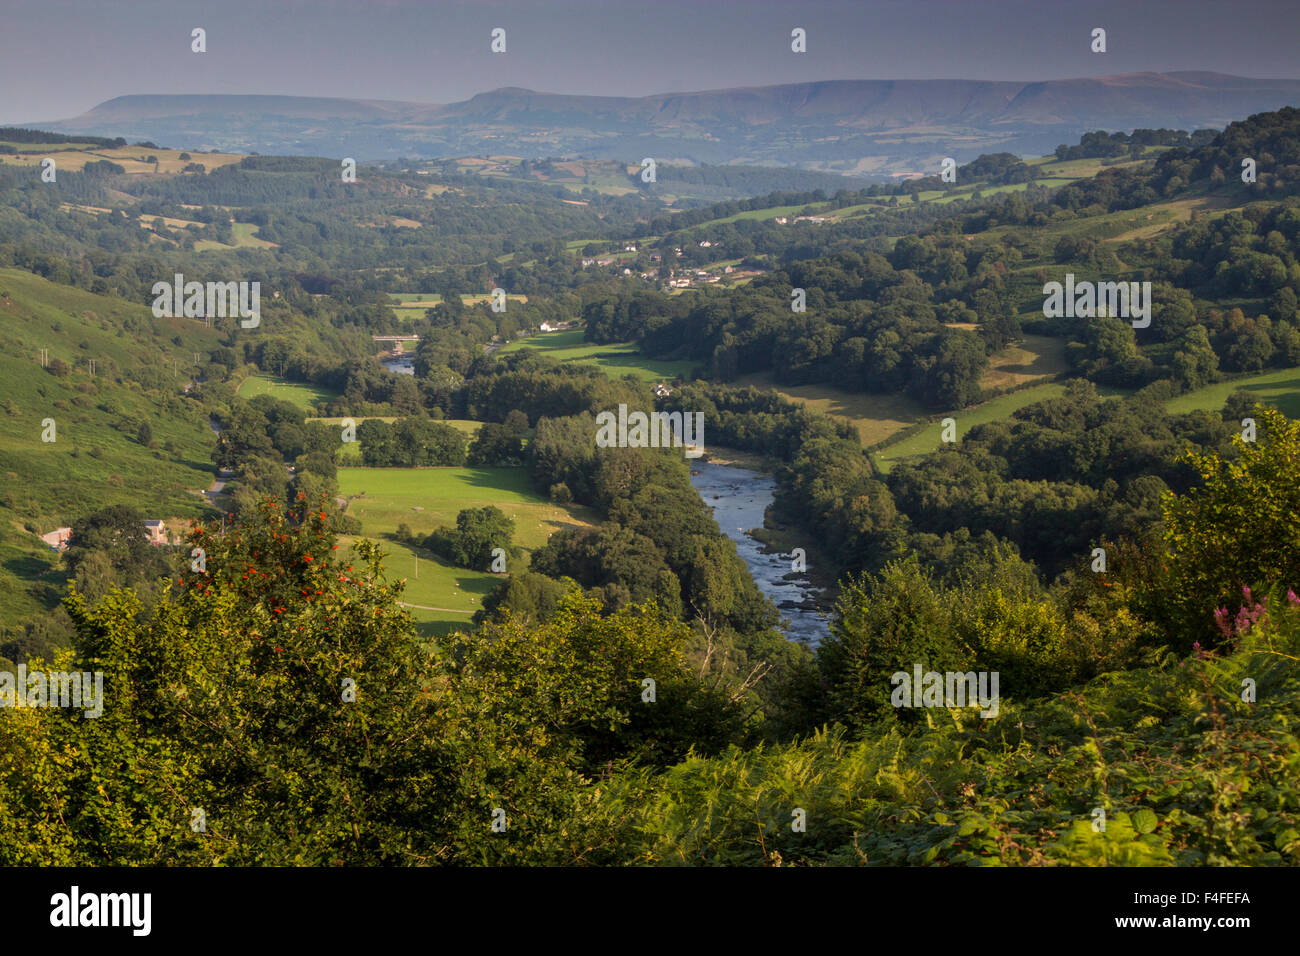 La vallée de la Wye près de Builth Wells à la Montagne Noire, au sud de Brecon Beacons gamme Powys Pays de Galles UK Banque D'Images